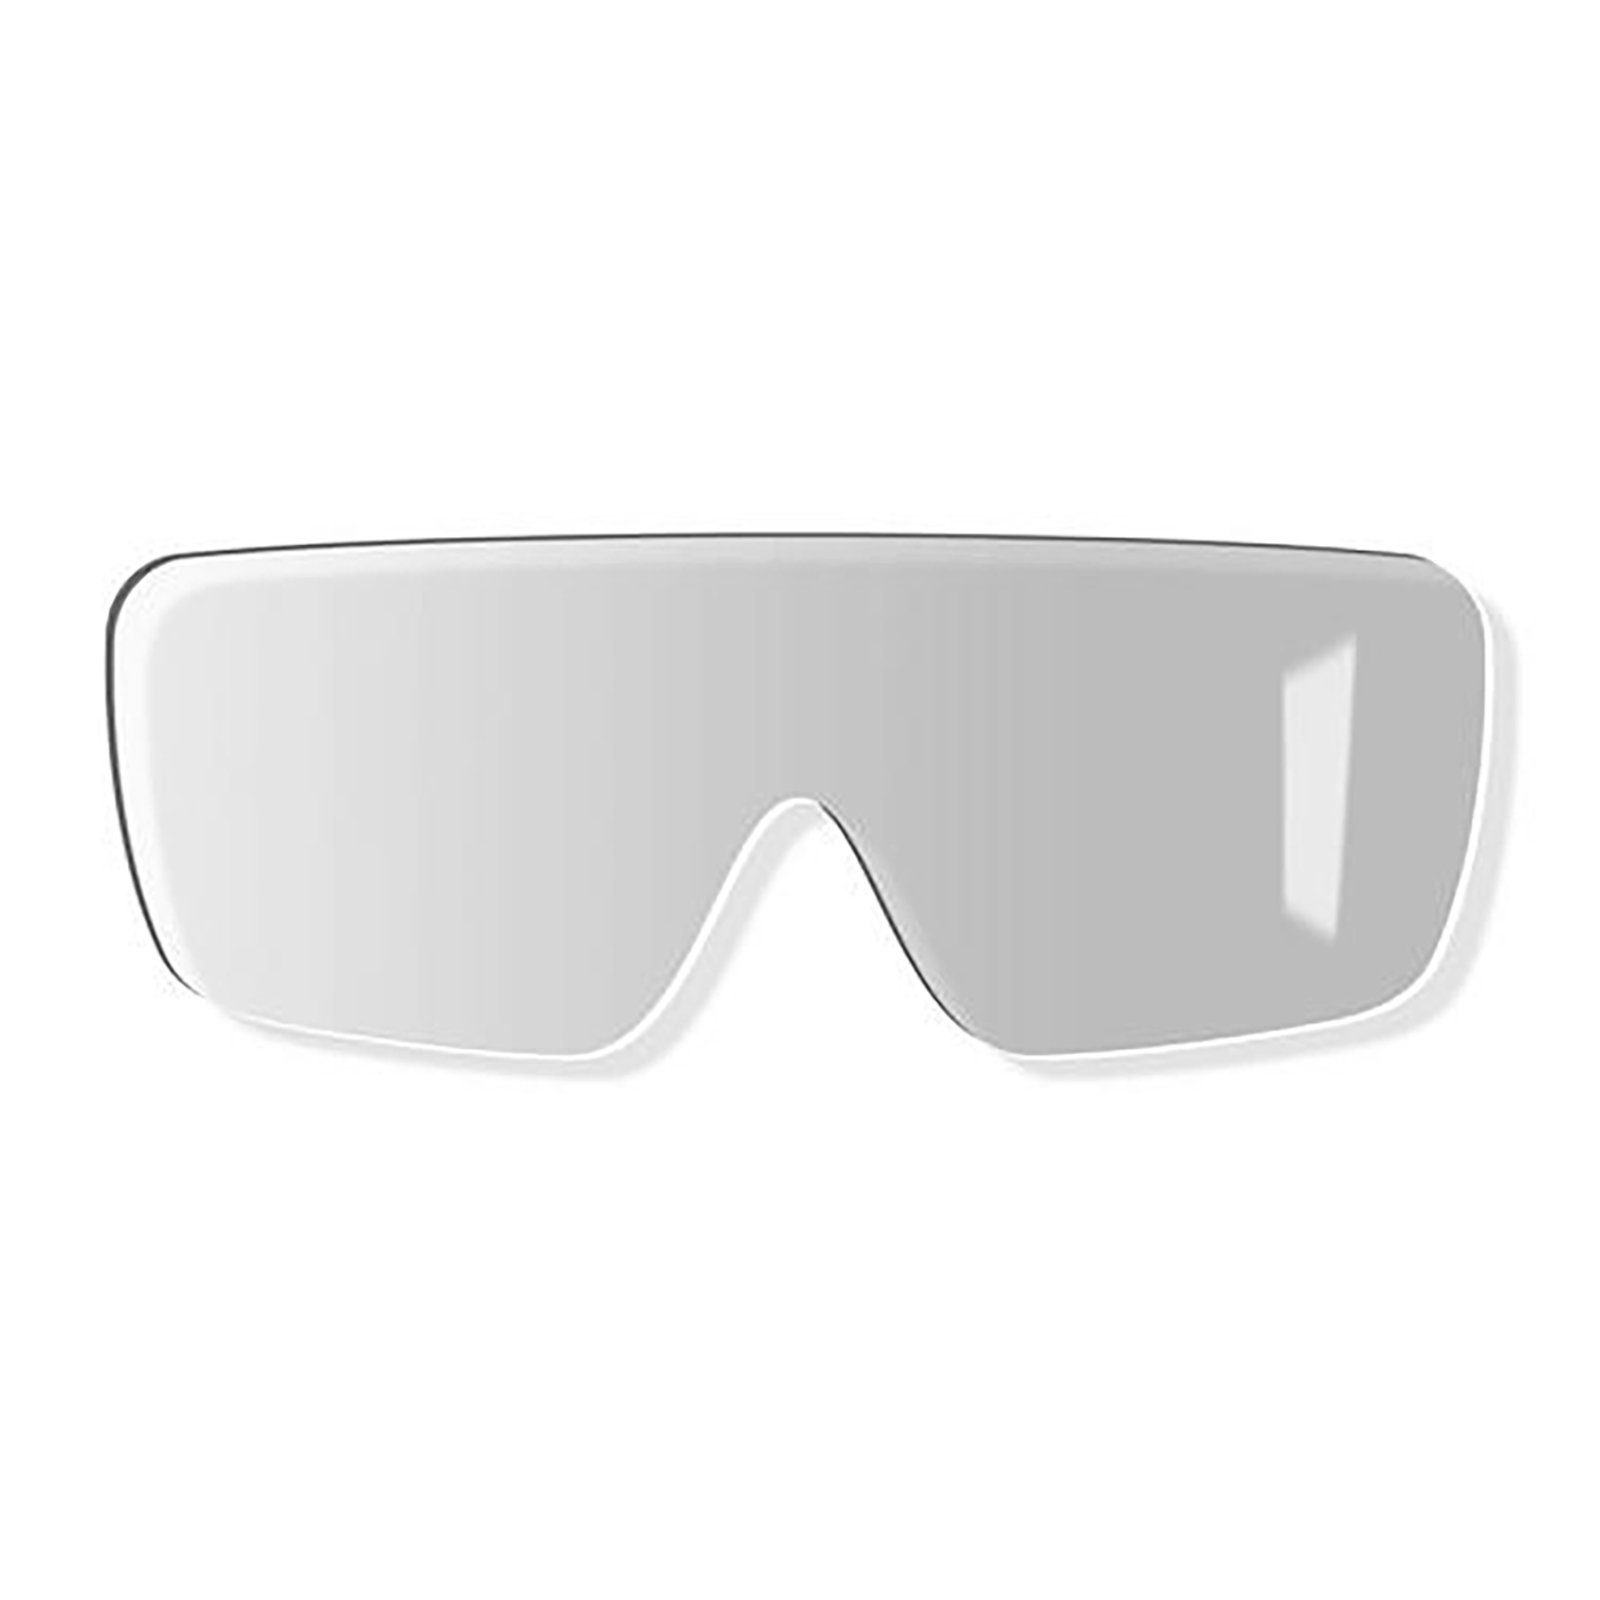 Uvex Arbeitsschutzbrille Ersatzscheibe 9302256 grau 23% sv exc.